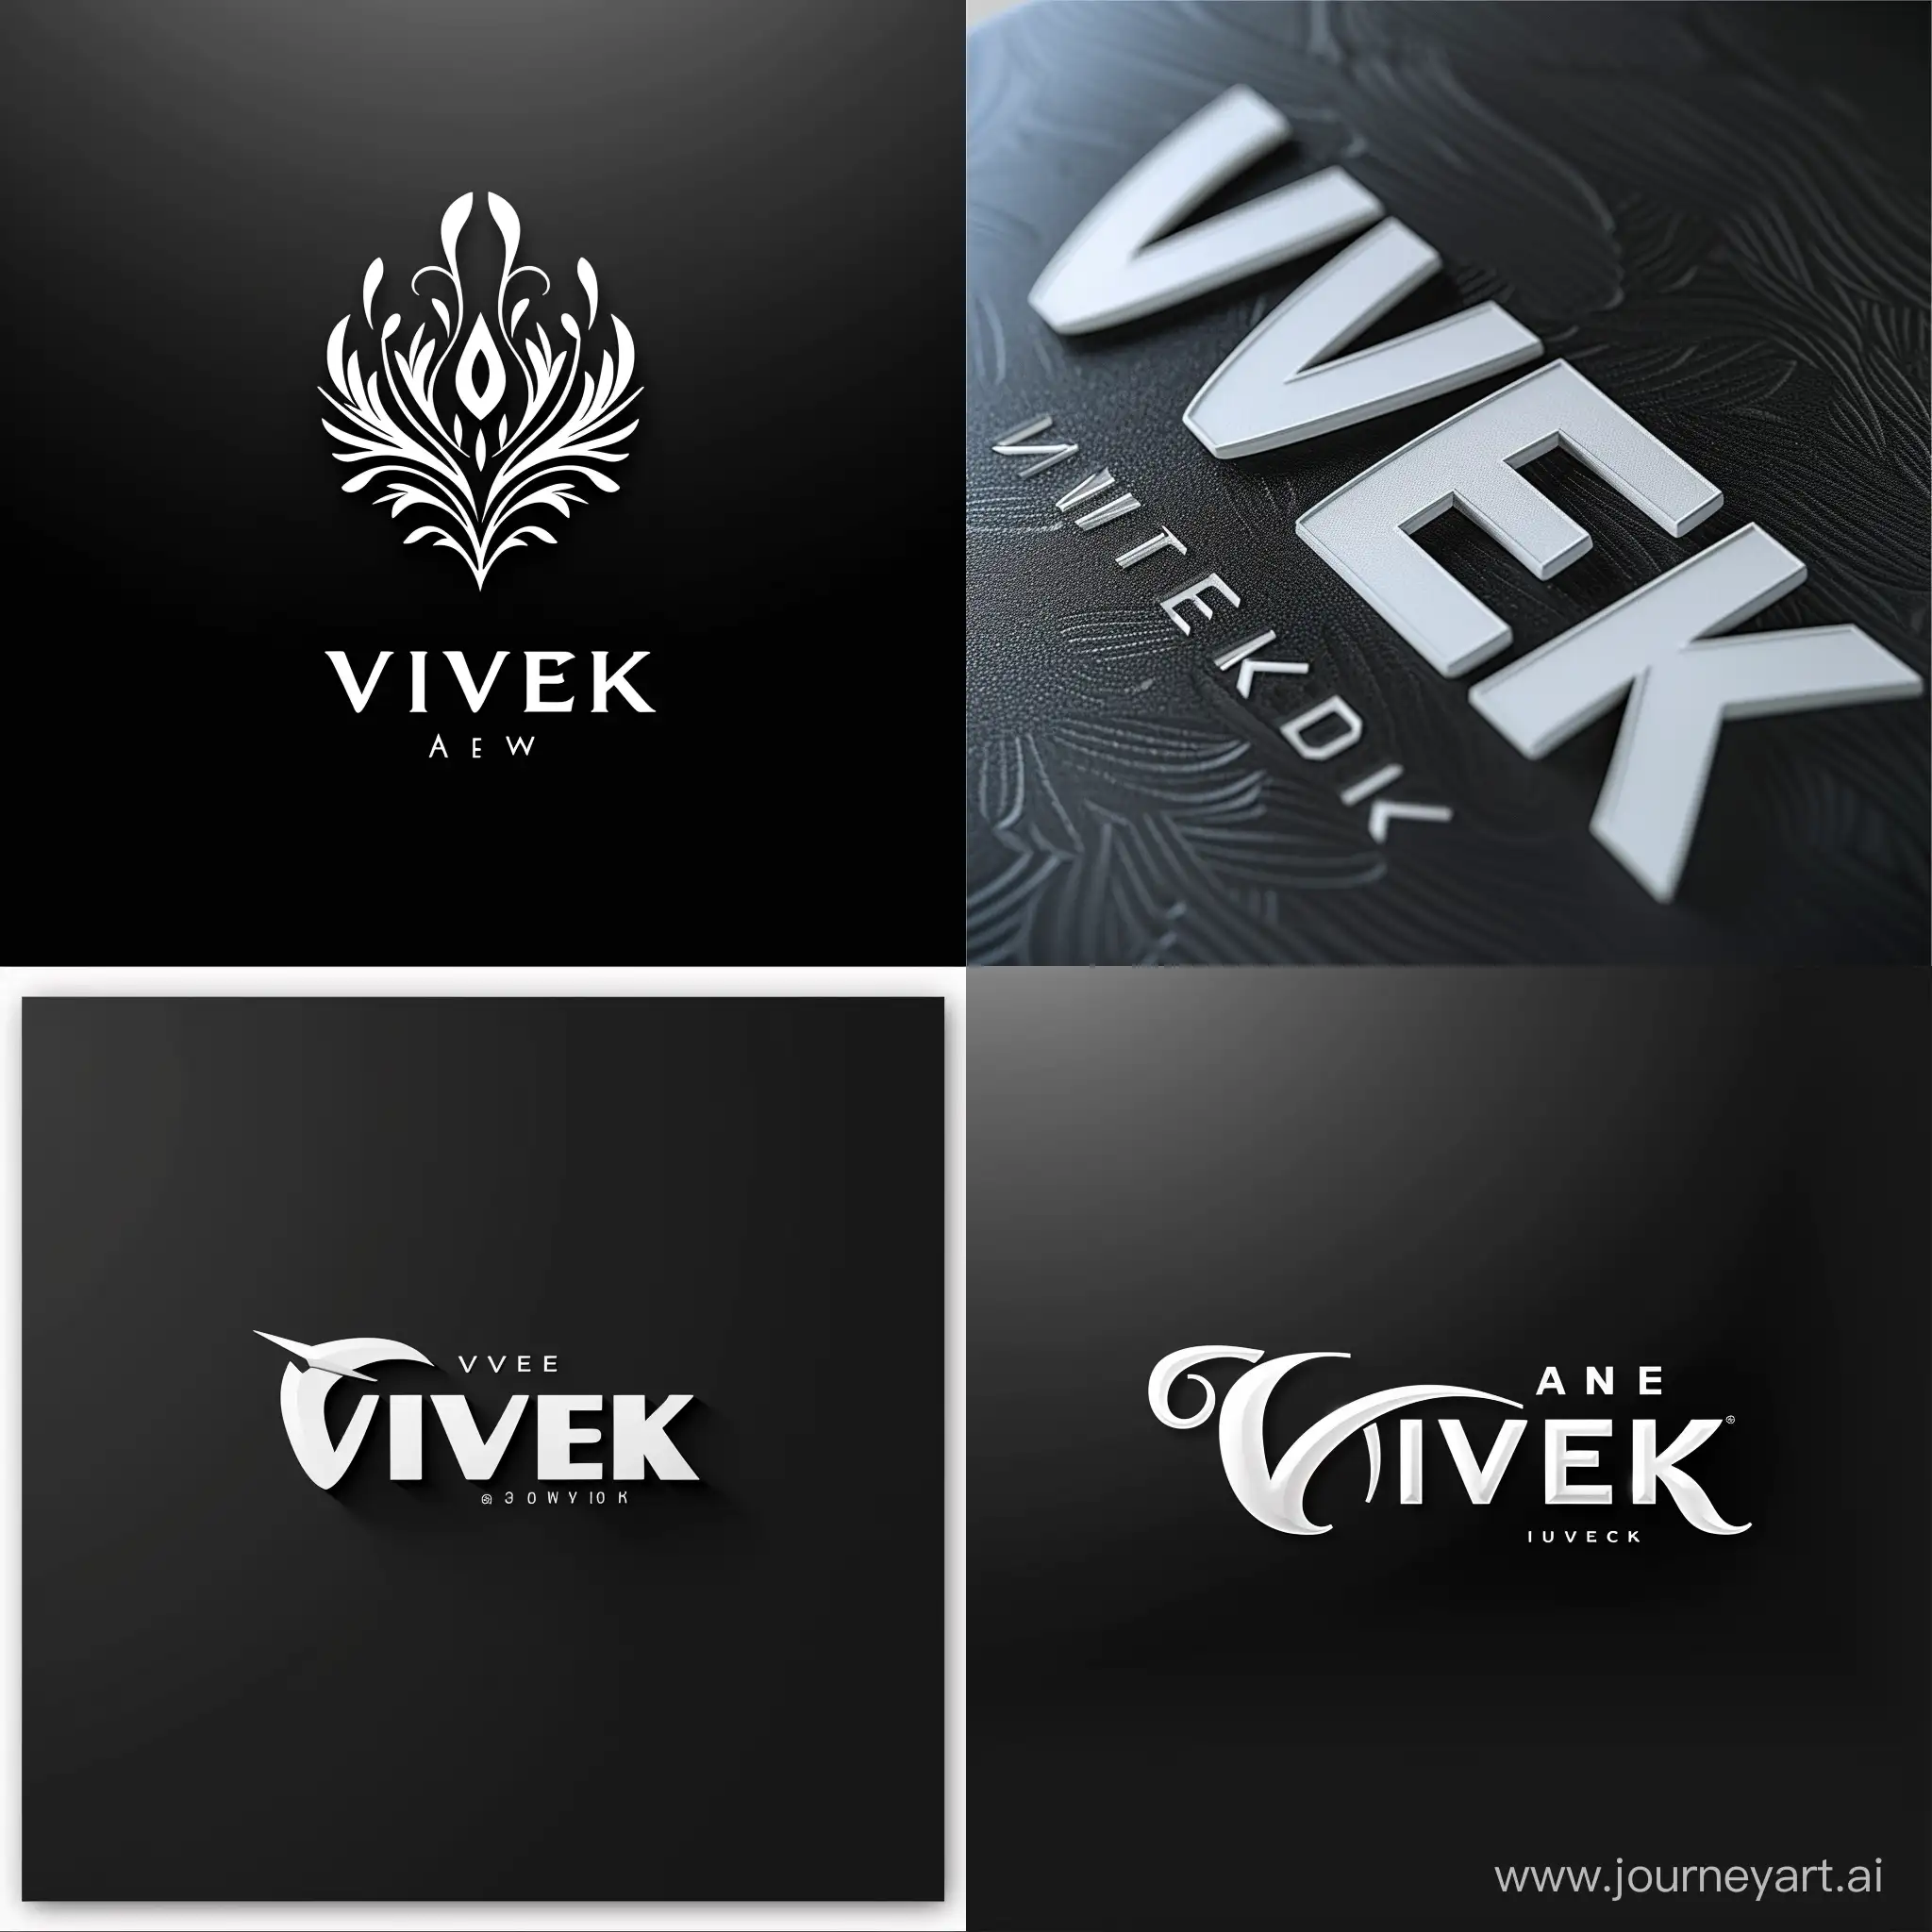 Elegant-Black-and-White-Logo-Design-for-Vivek-with-a-Striking-V